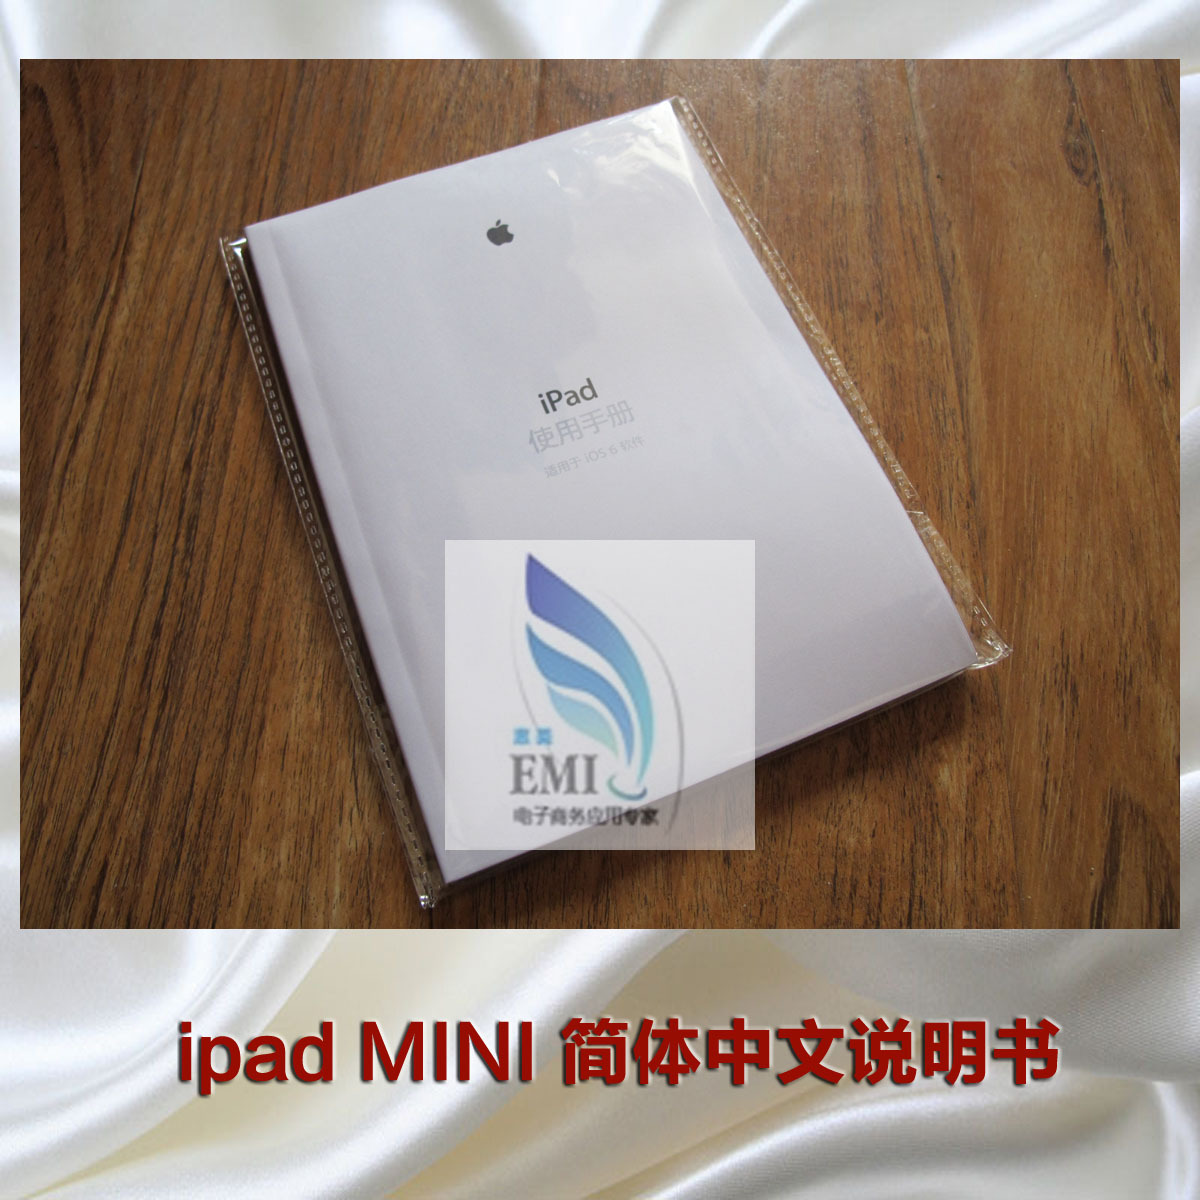 苹果 ipad Mini ipadmini 说明书 简体中文版使用